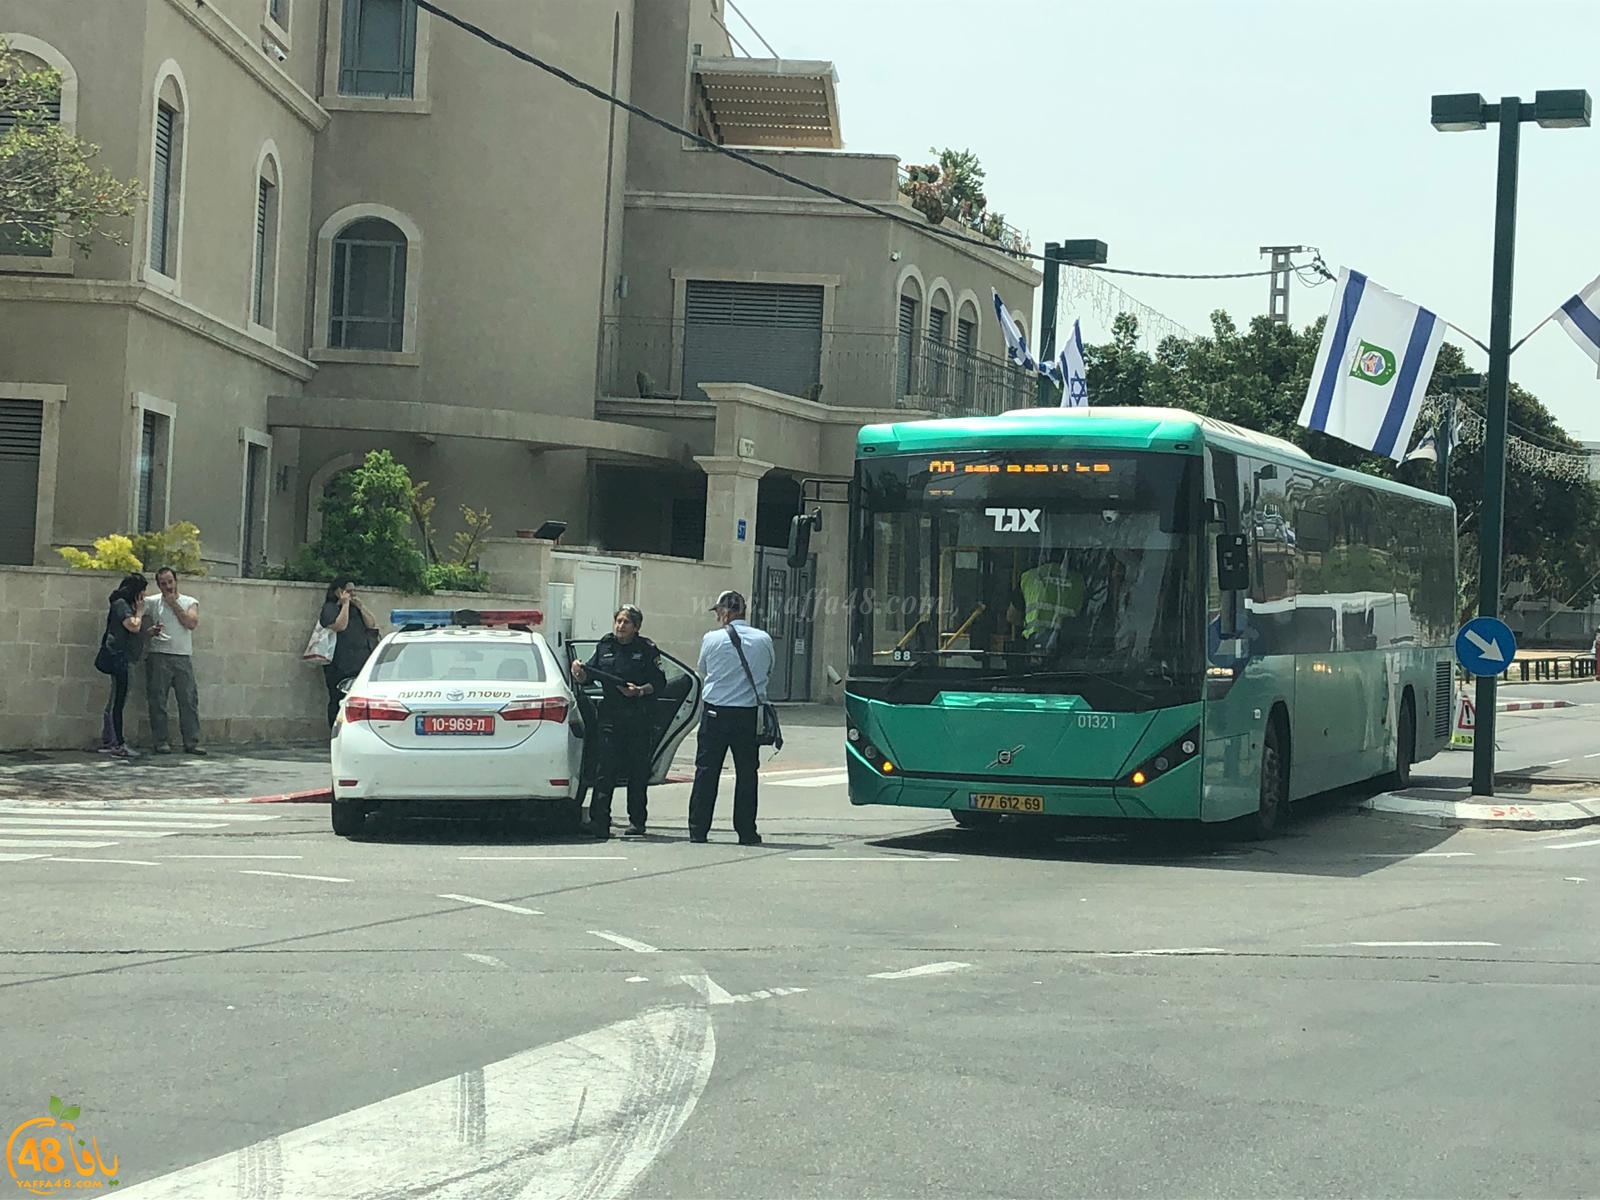  يافا: إصابة شخصين داخل حافلة اثر توقفها المفاجئ 